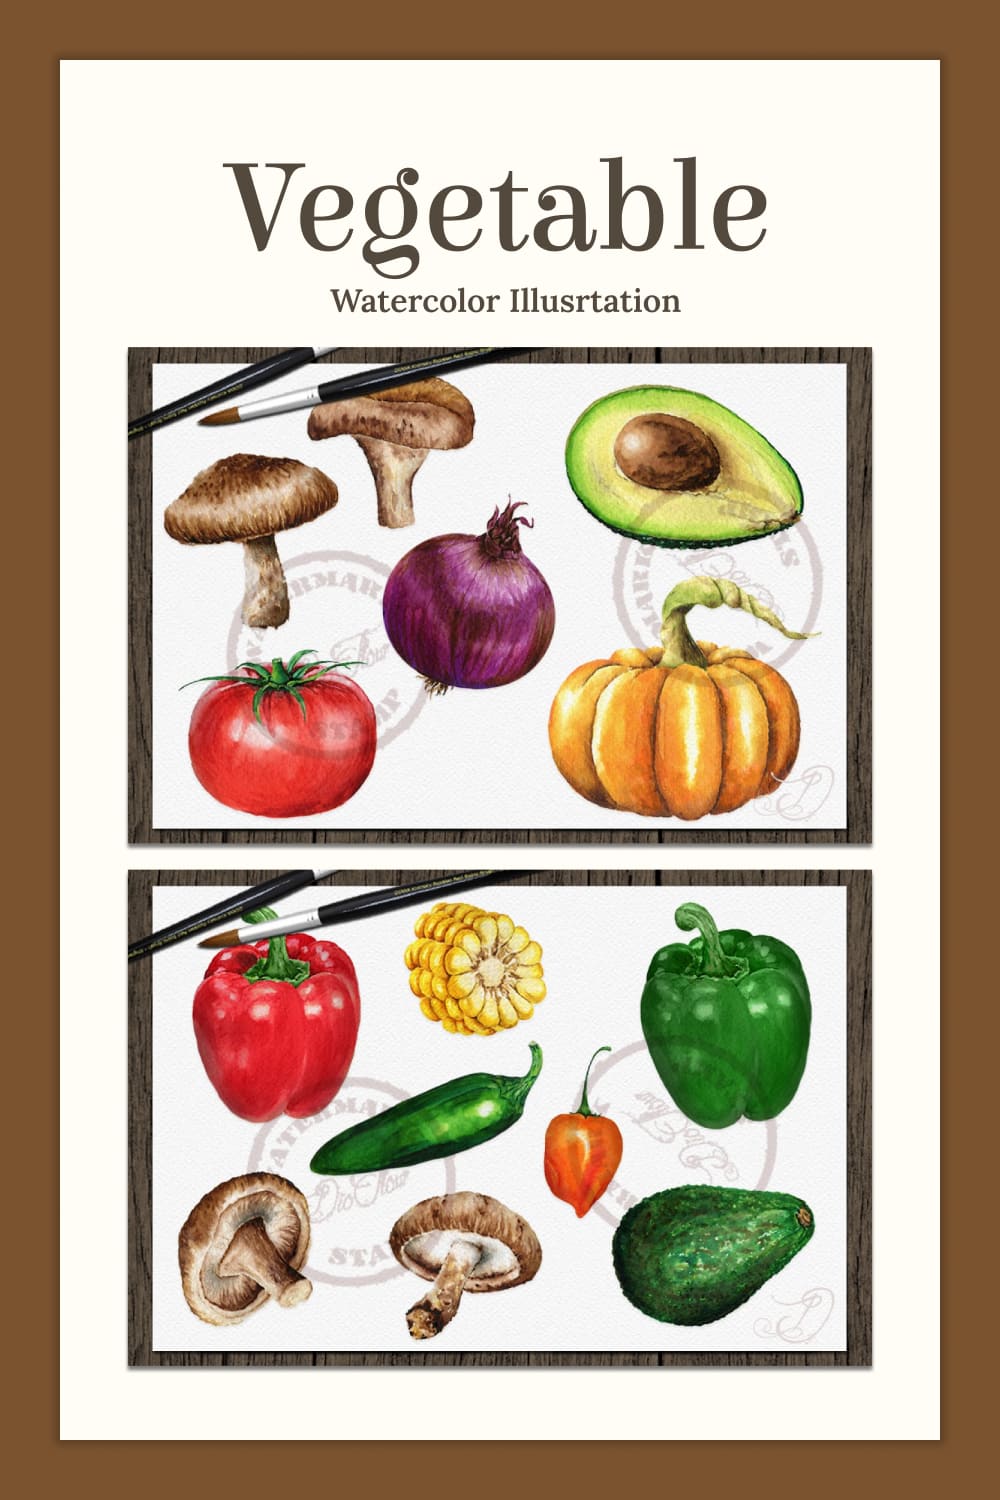 Vegetable watercolor illusrtation - pinterest image preview.